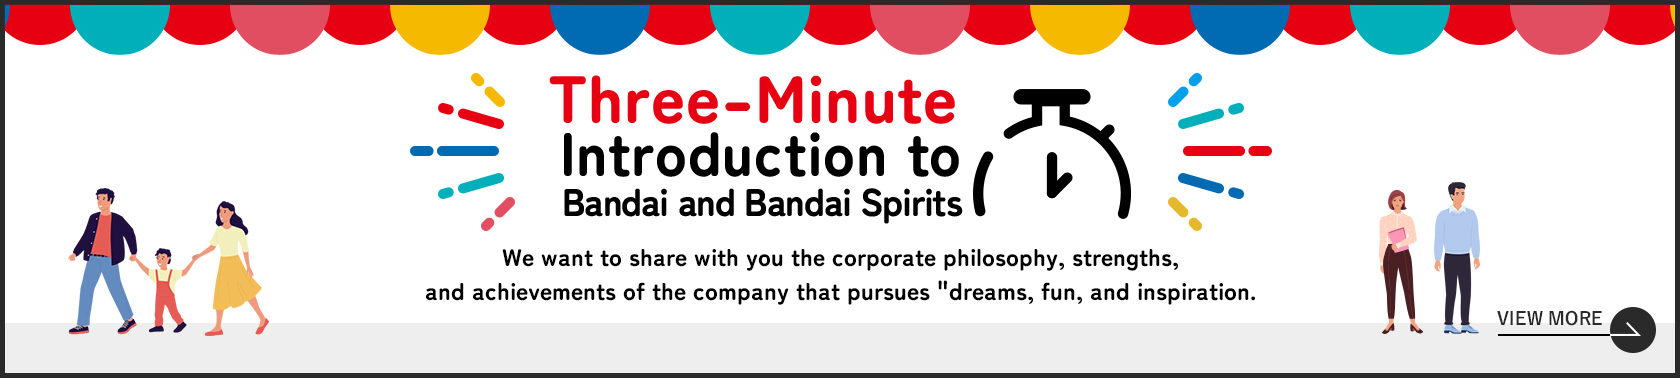 Three-Minute Introduction to Bandai and Bandai Spirits